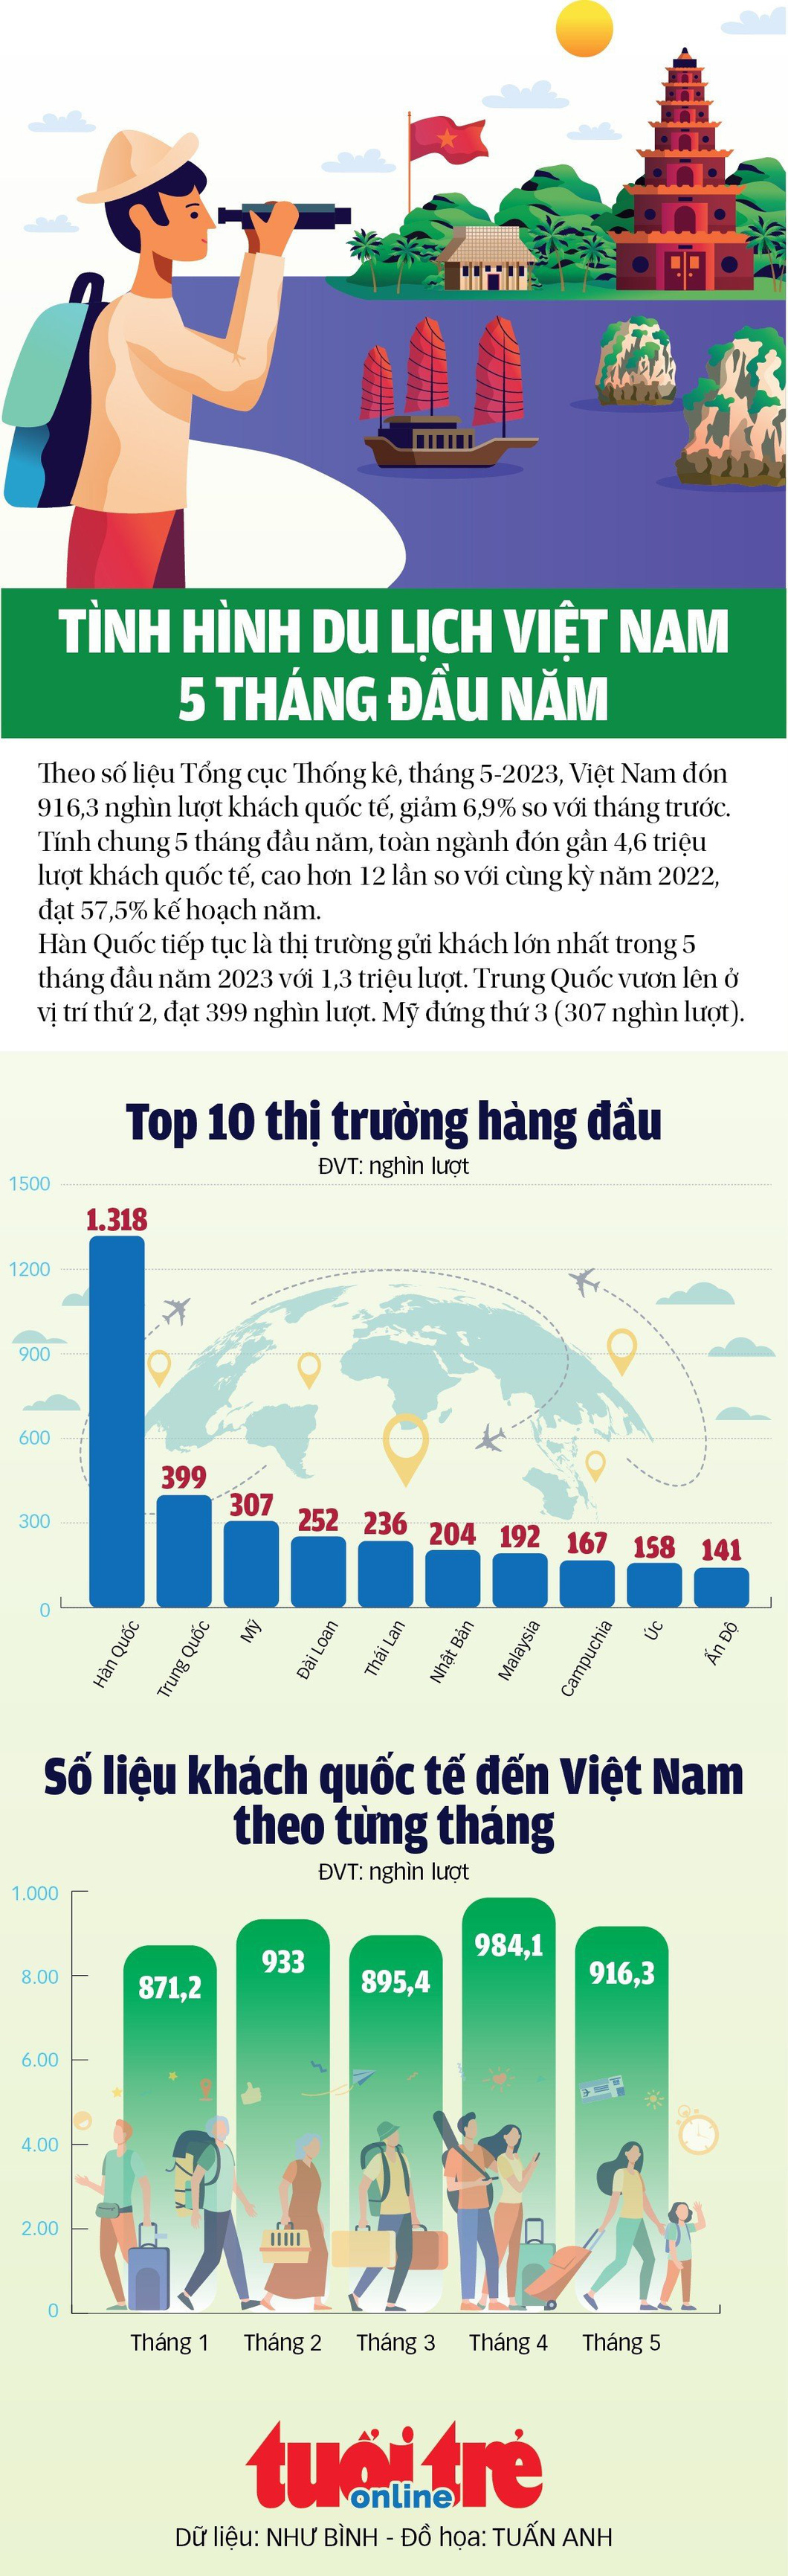 Gần 4,6 triệu lượt khách quốc tế đến Việt Nam trong 5 tháng đầu năm - Ảnh 1.